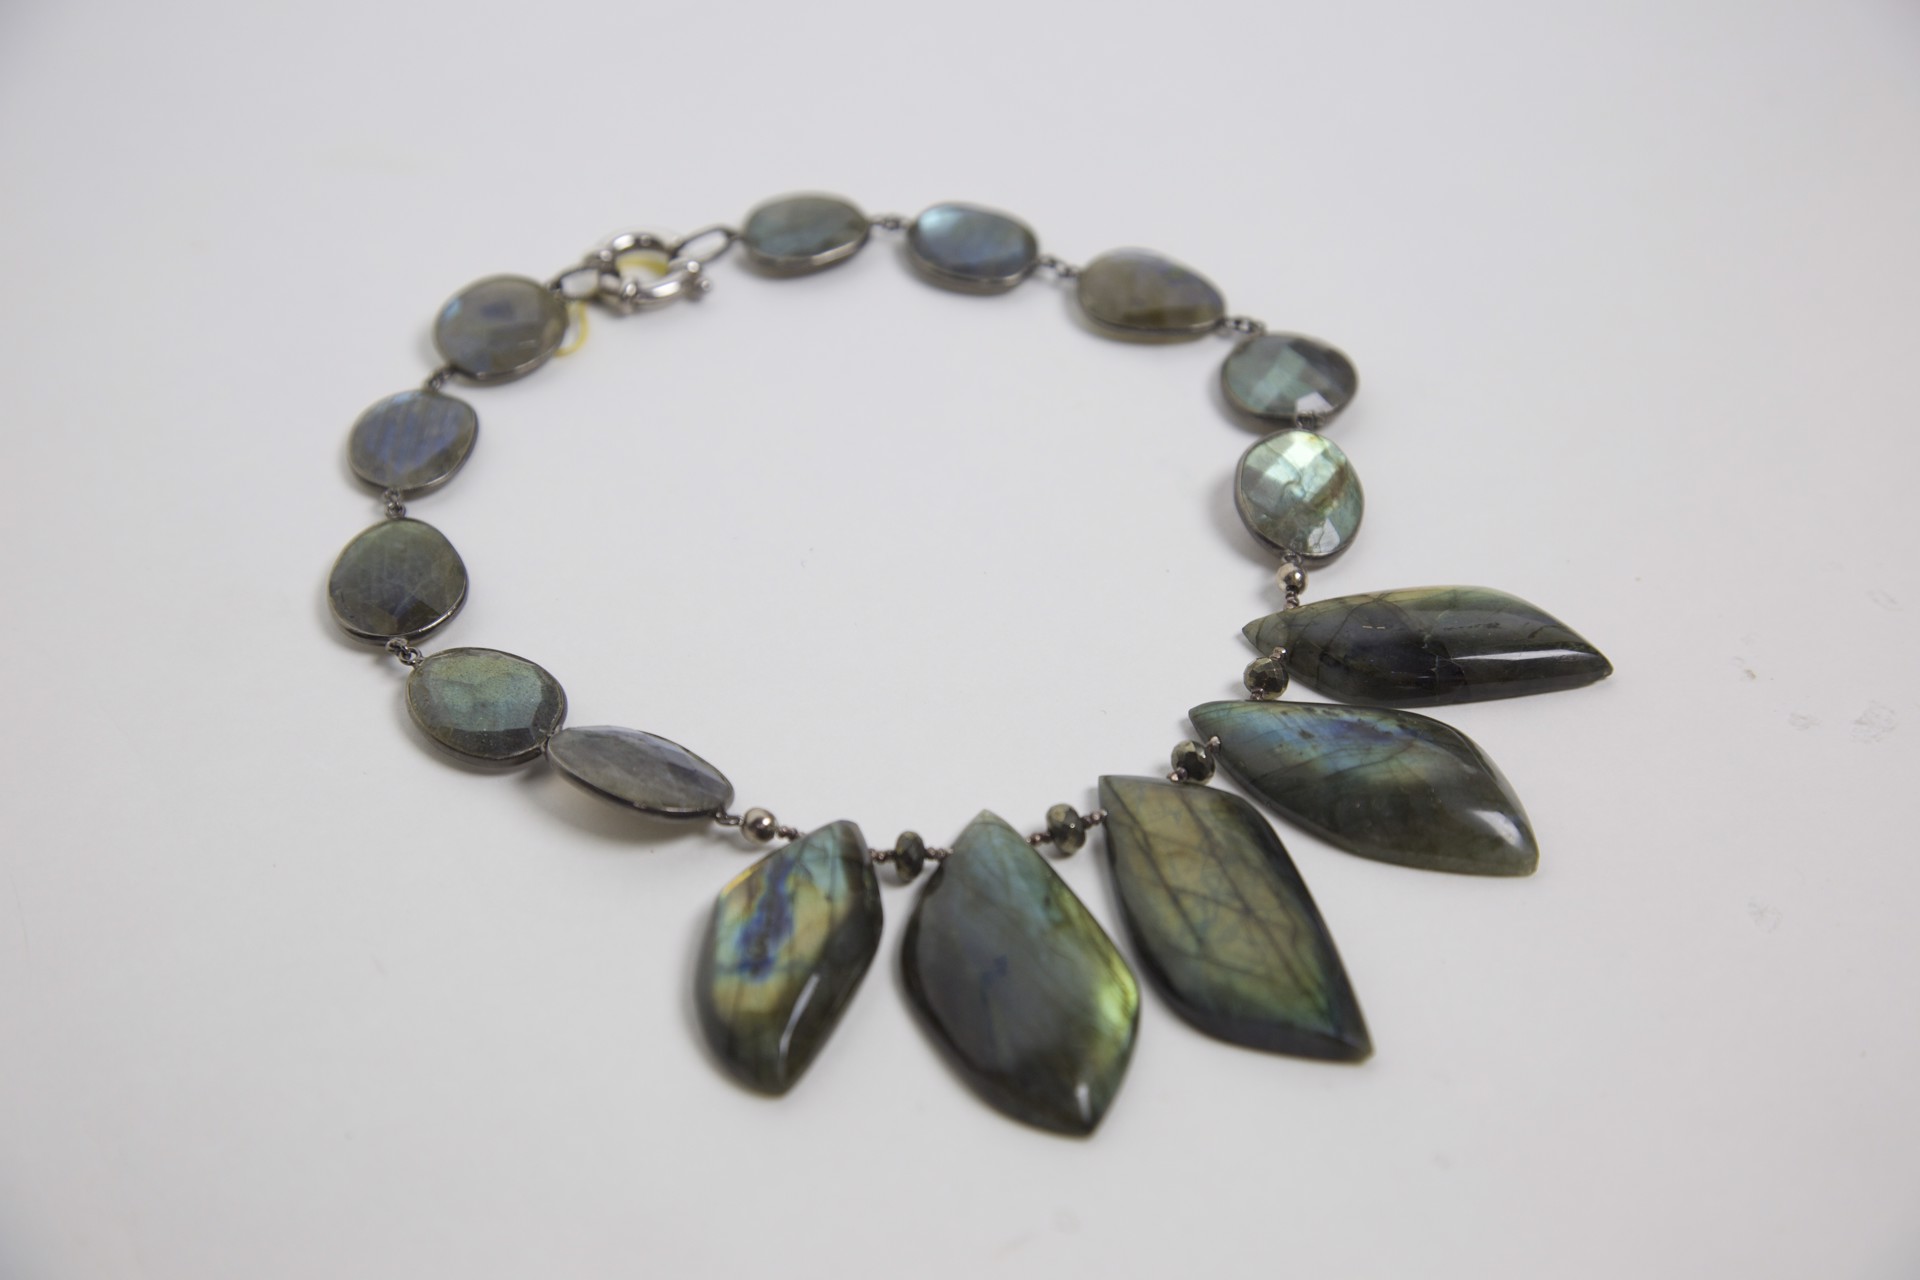 Labradorite and hematite beads on sterling silver choker by Jeri Mitrani